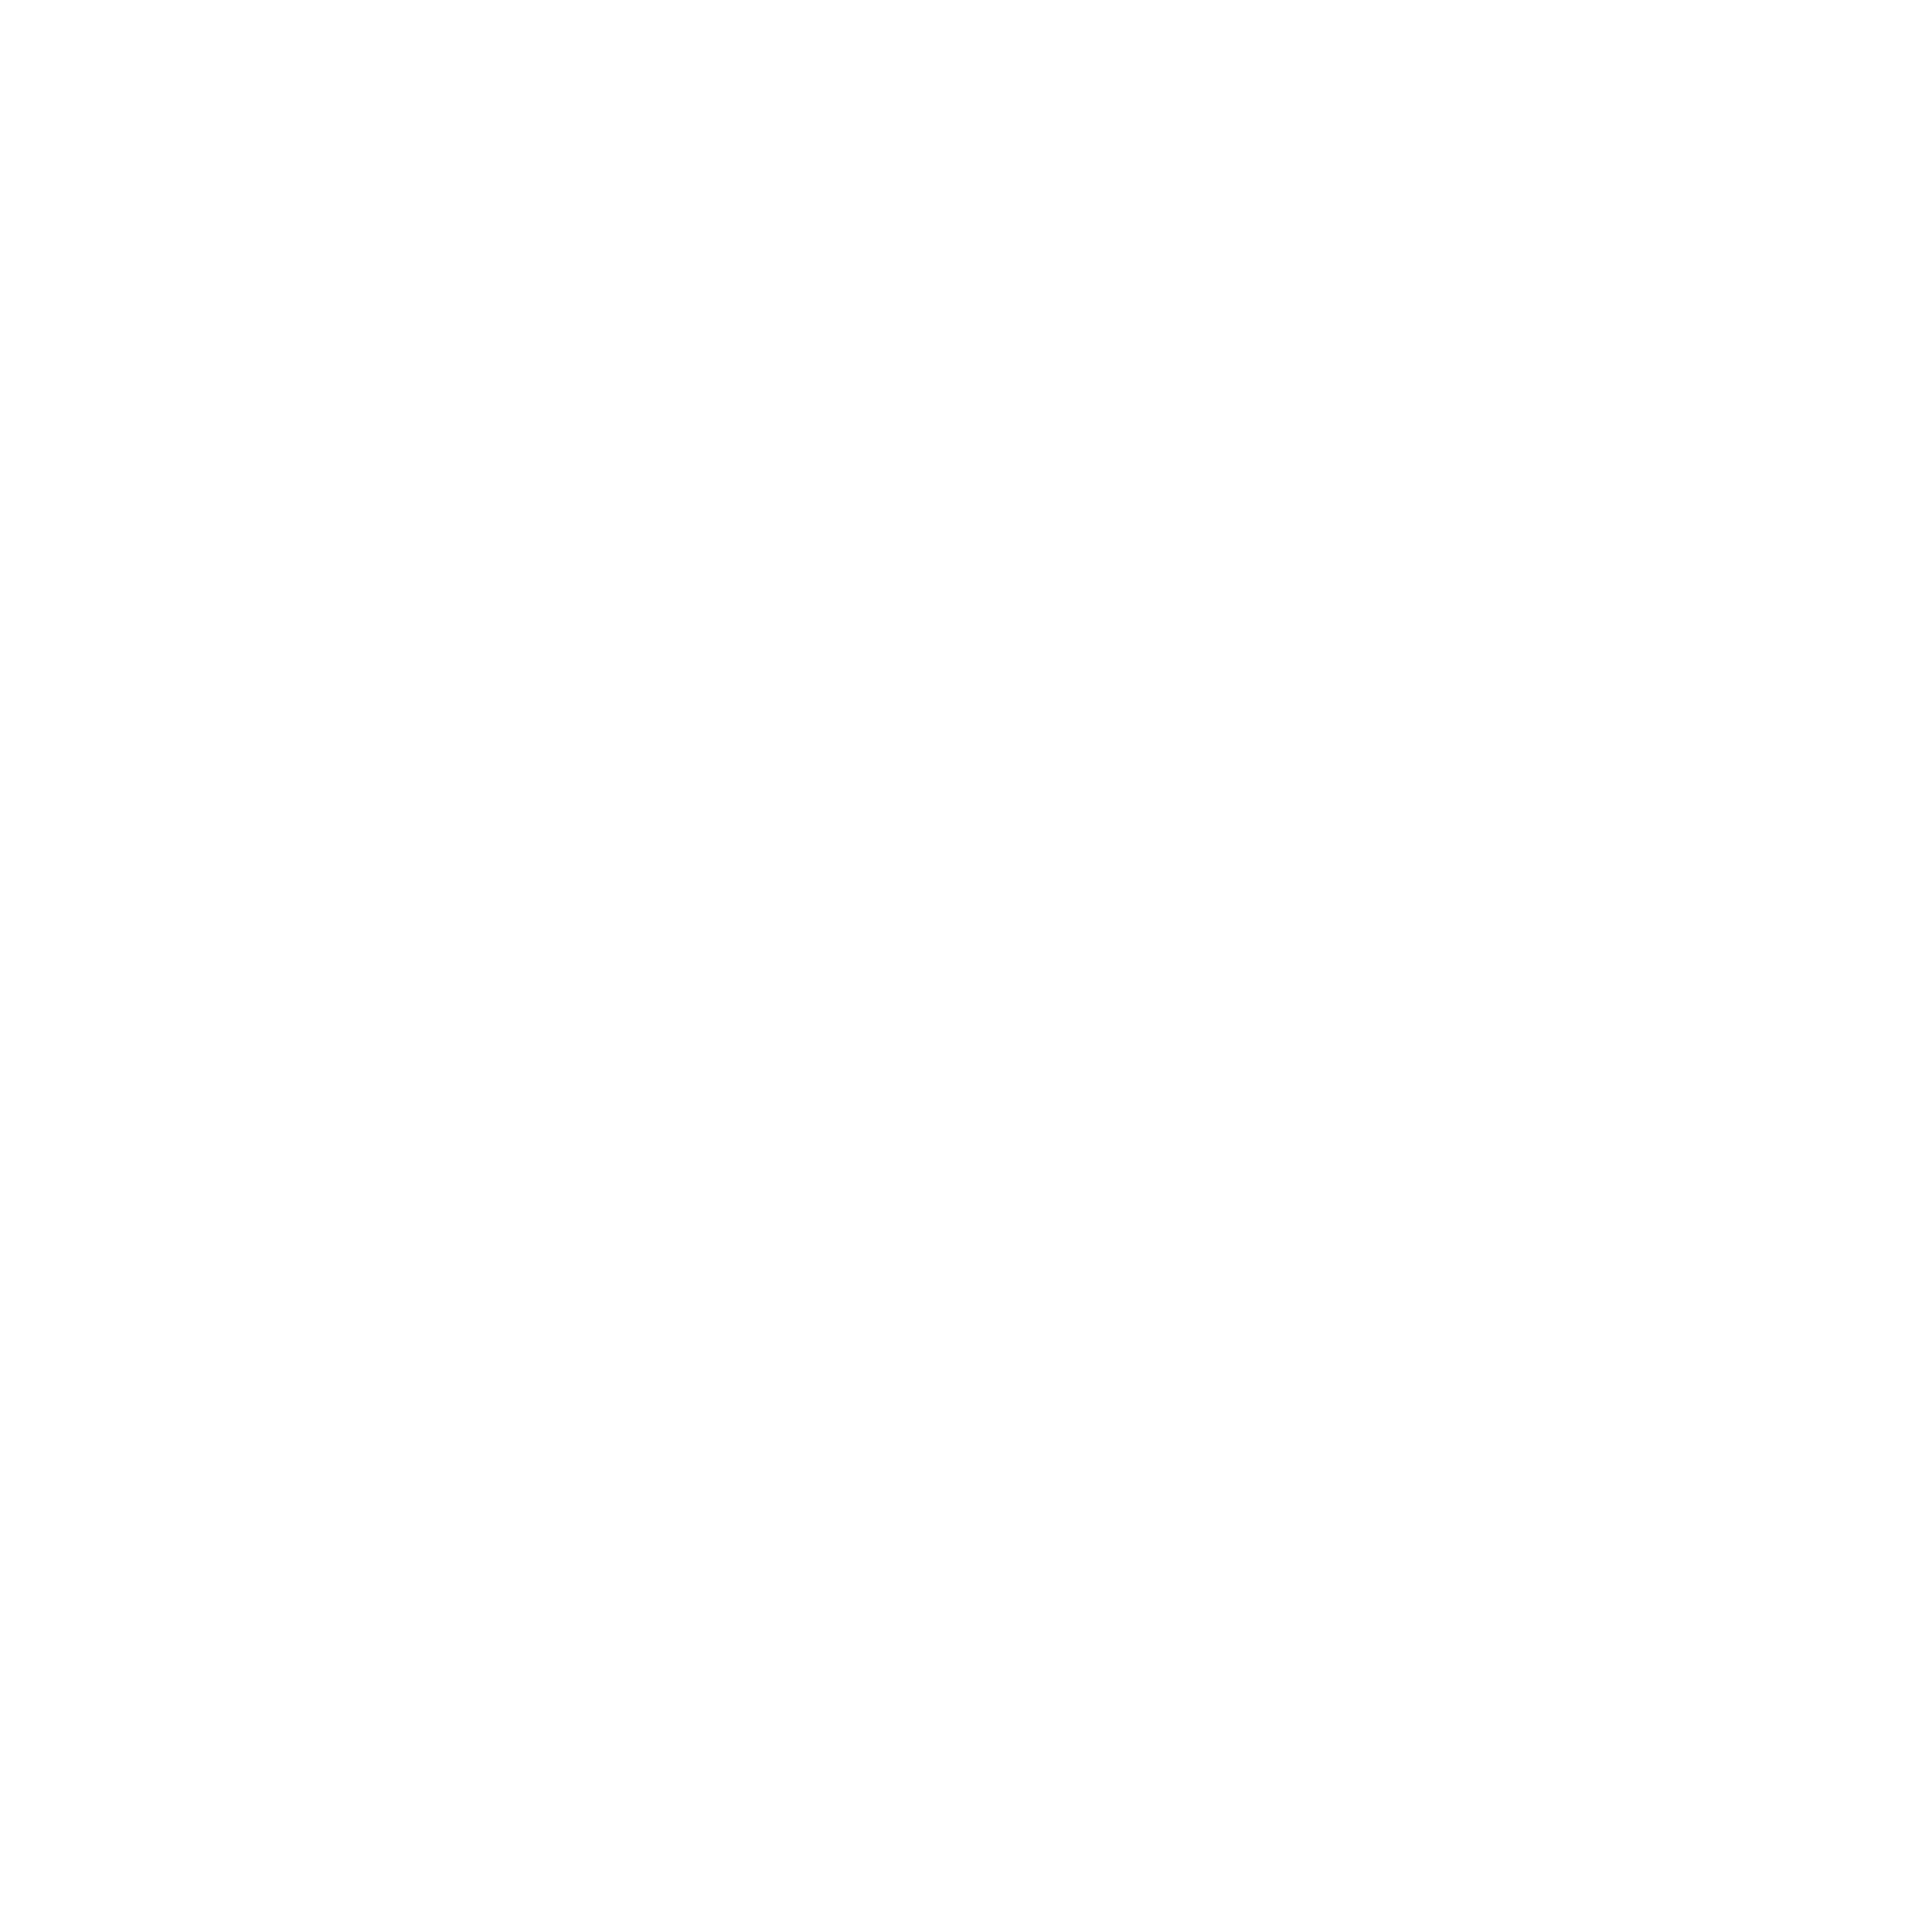 Wonder Park Foz